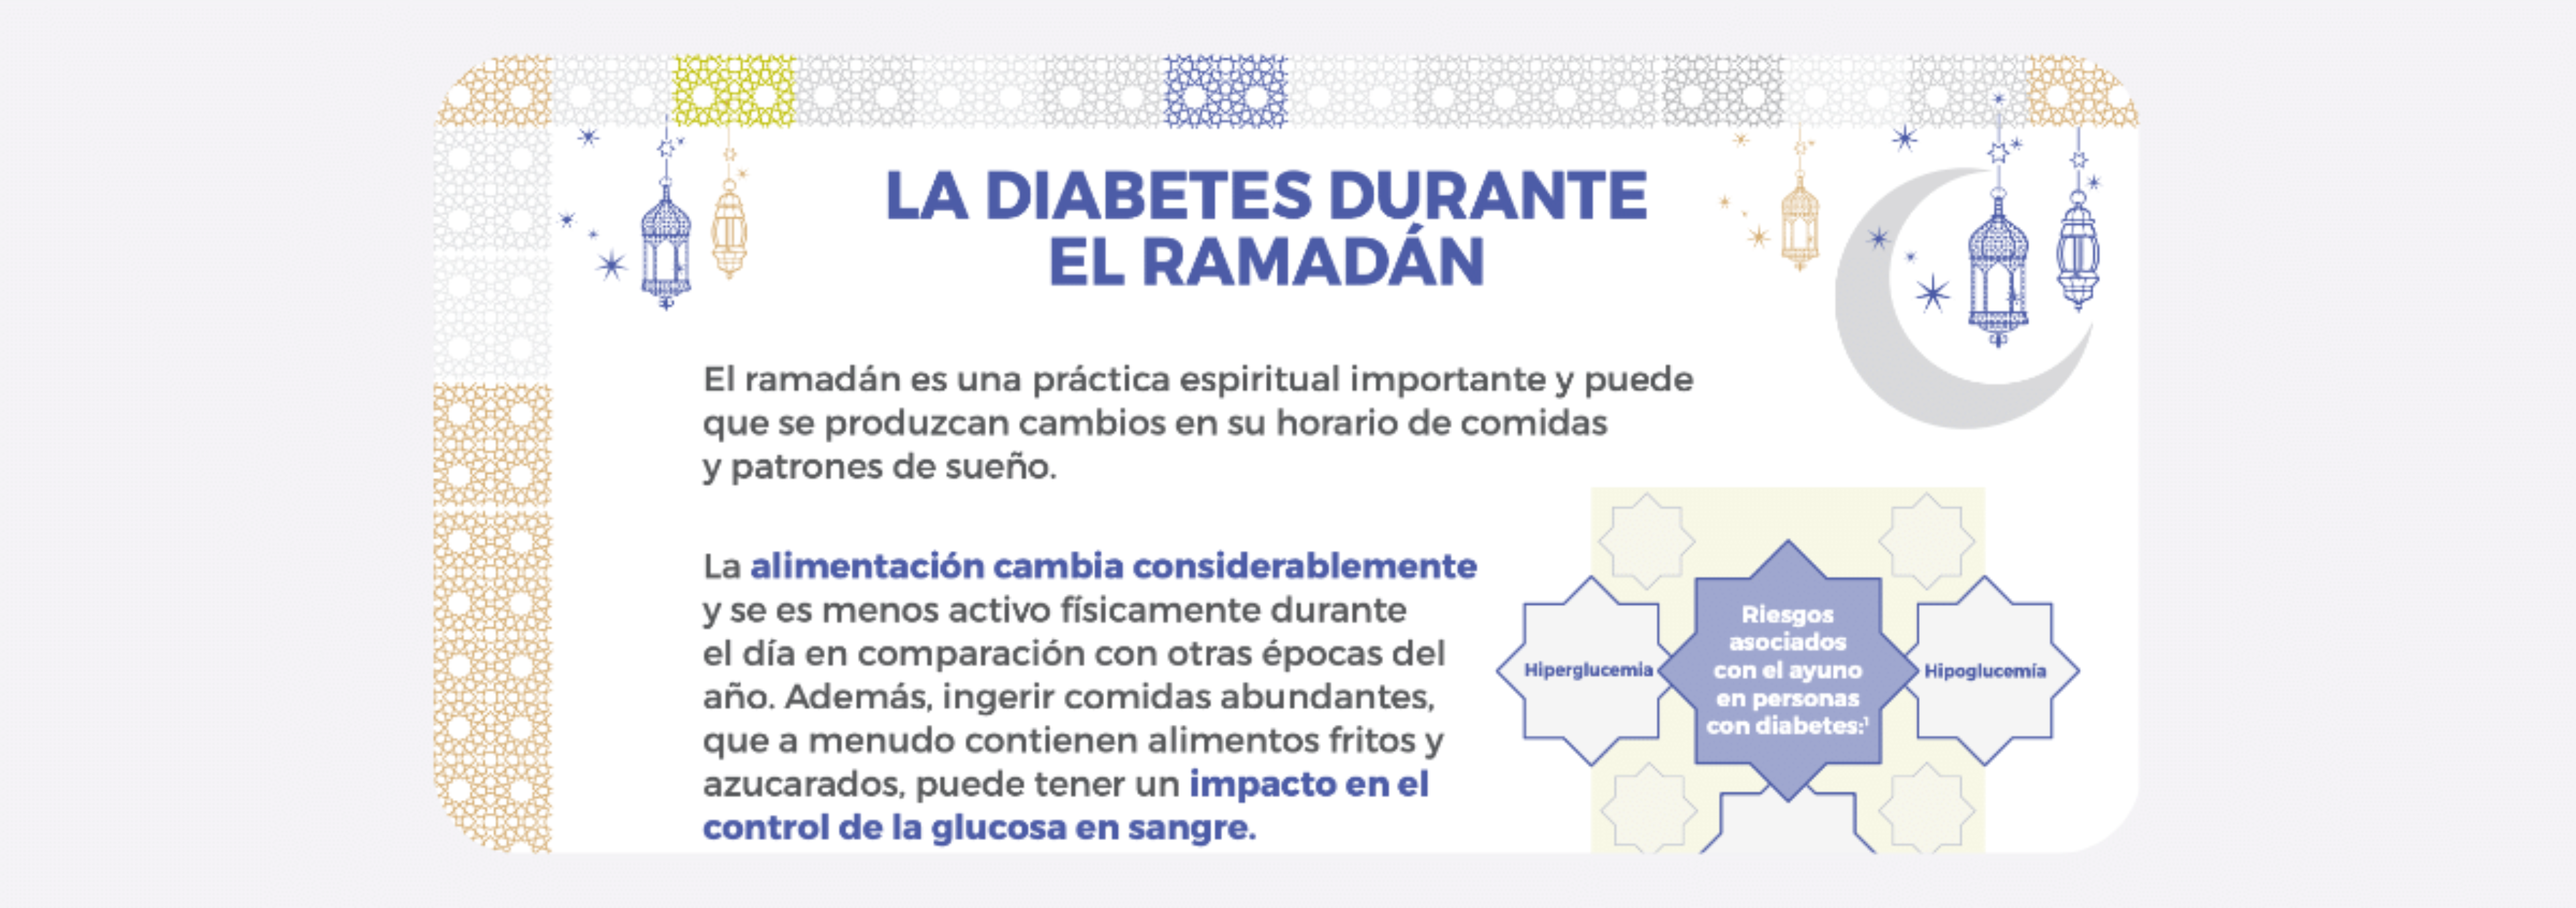 La diabetes durante el Ramadán: Para tu paciente - En castellano y árabe